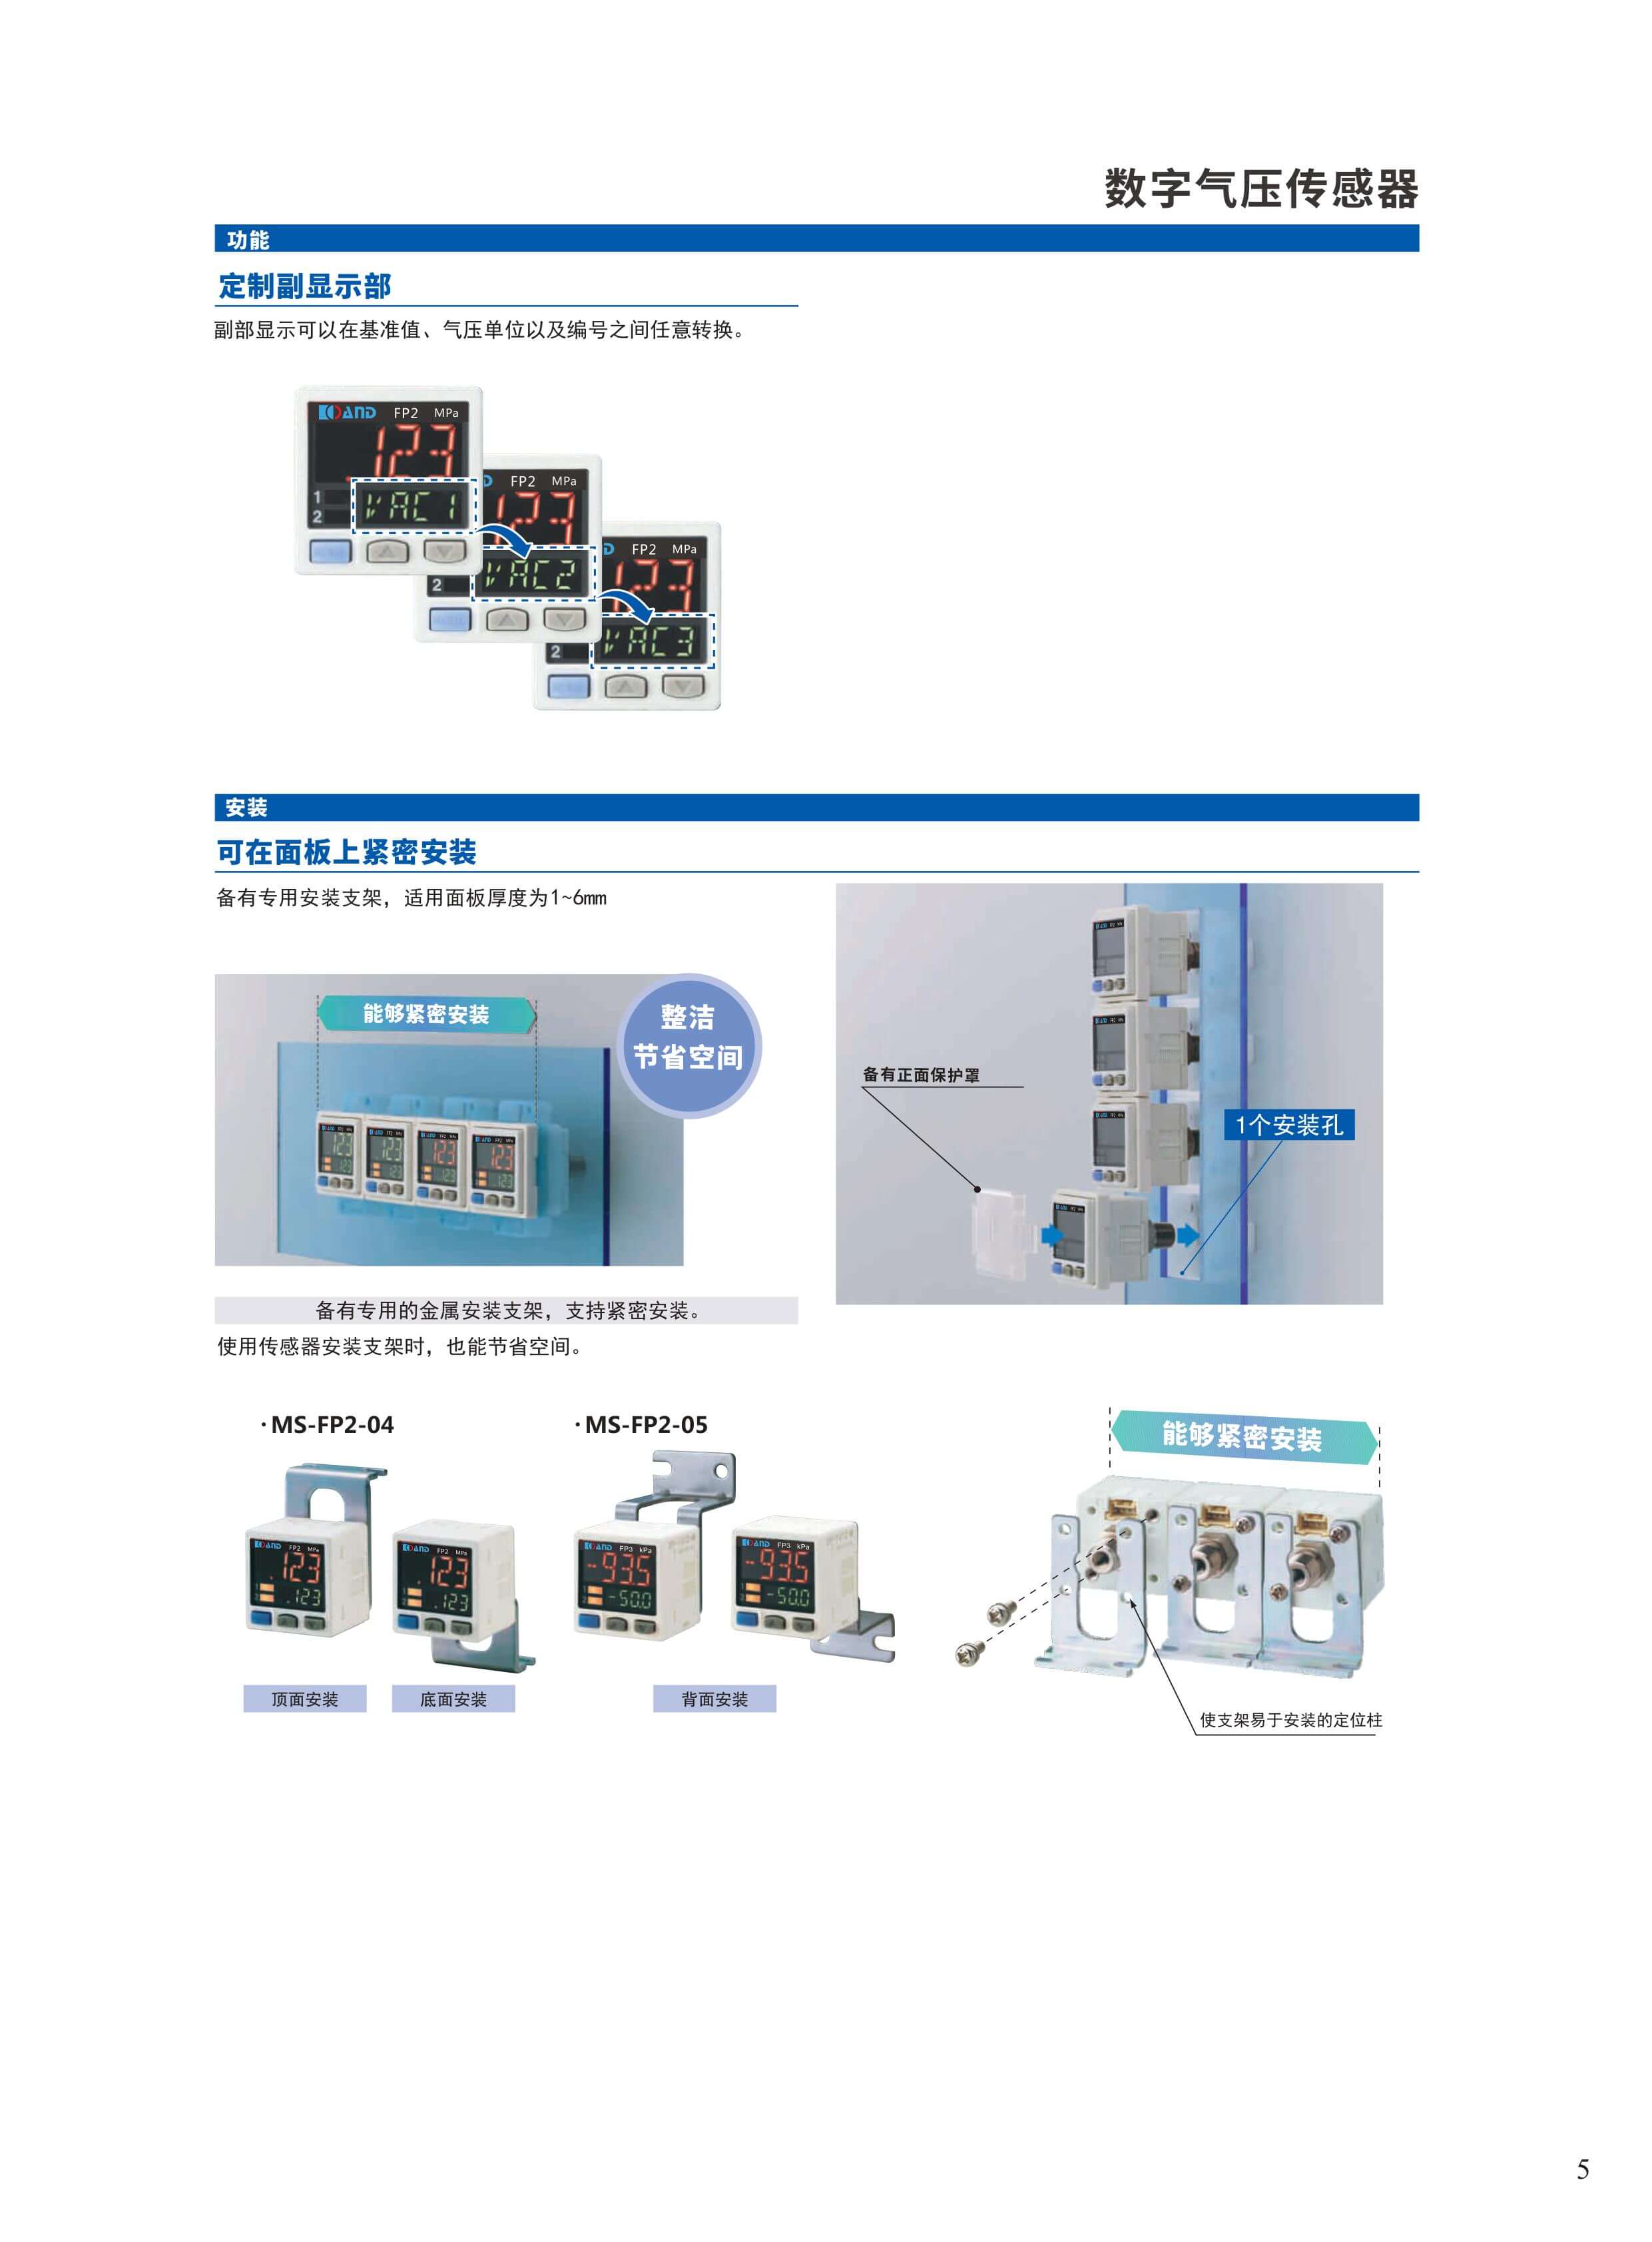 二相步进电机厂家/精密数字气压表报价/深圳市艾而特工业自动化设备有限公司